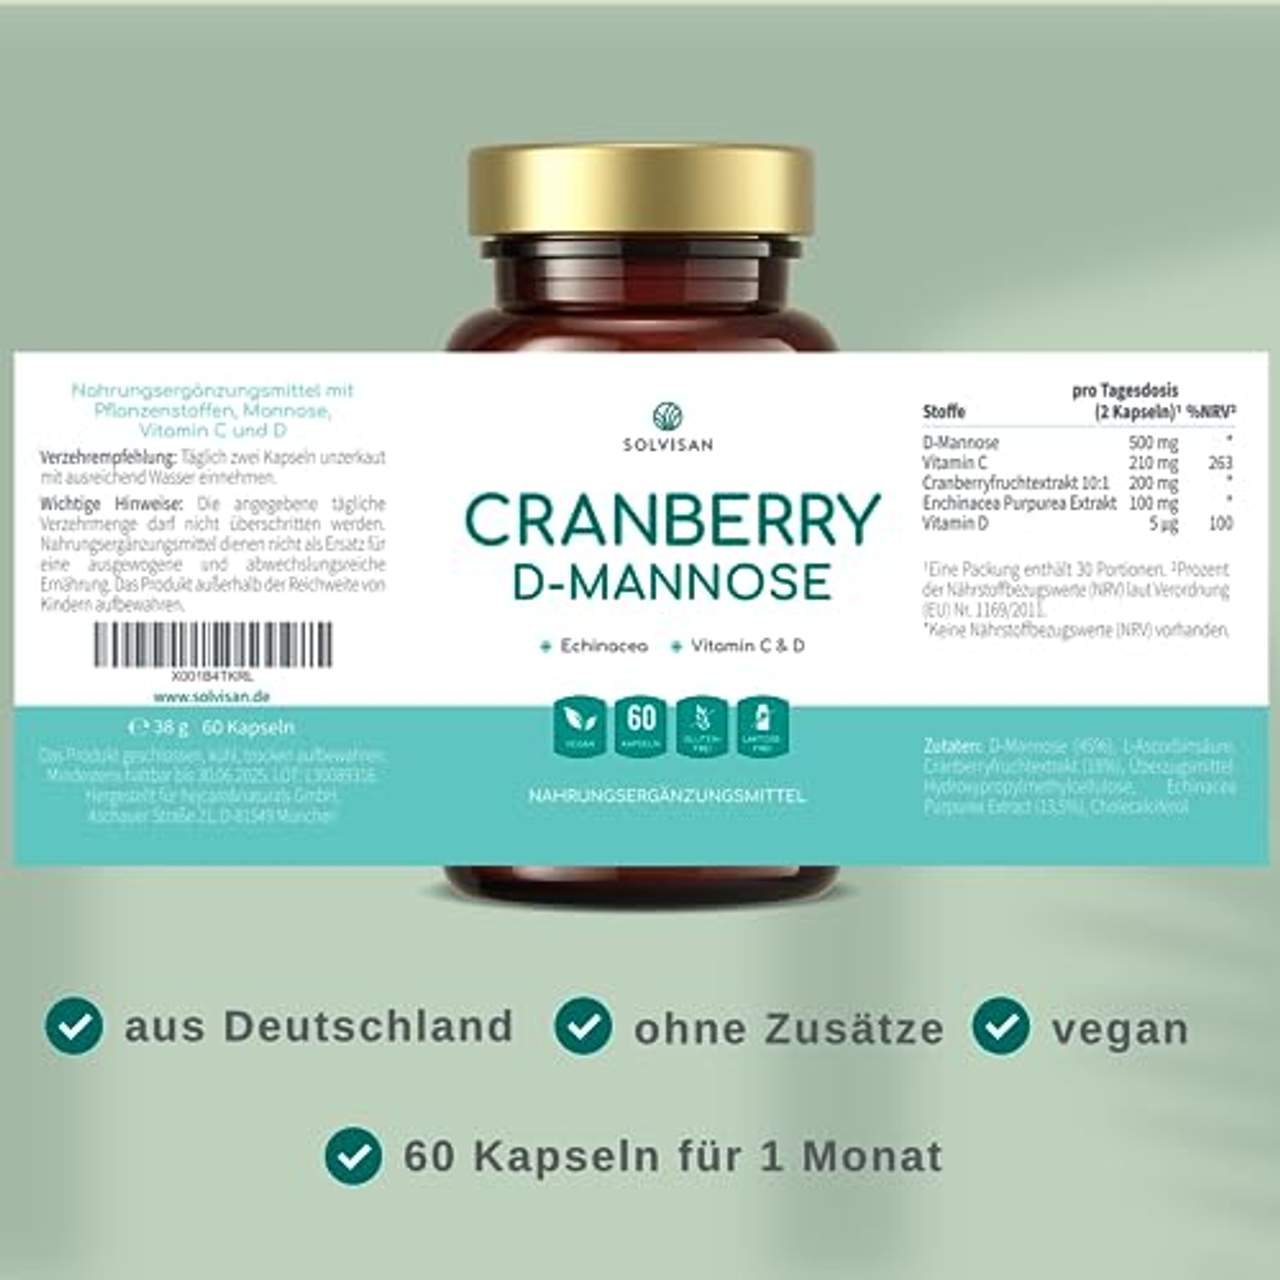 SOLVISAN Cranberry D-MANNOSE für Blase und Harnwege